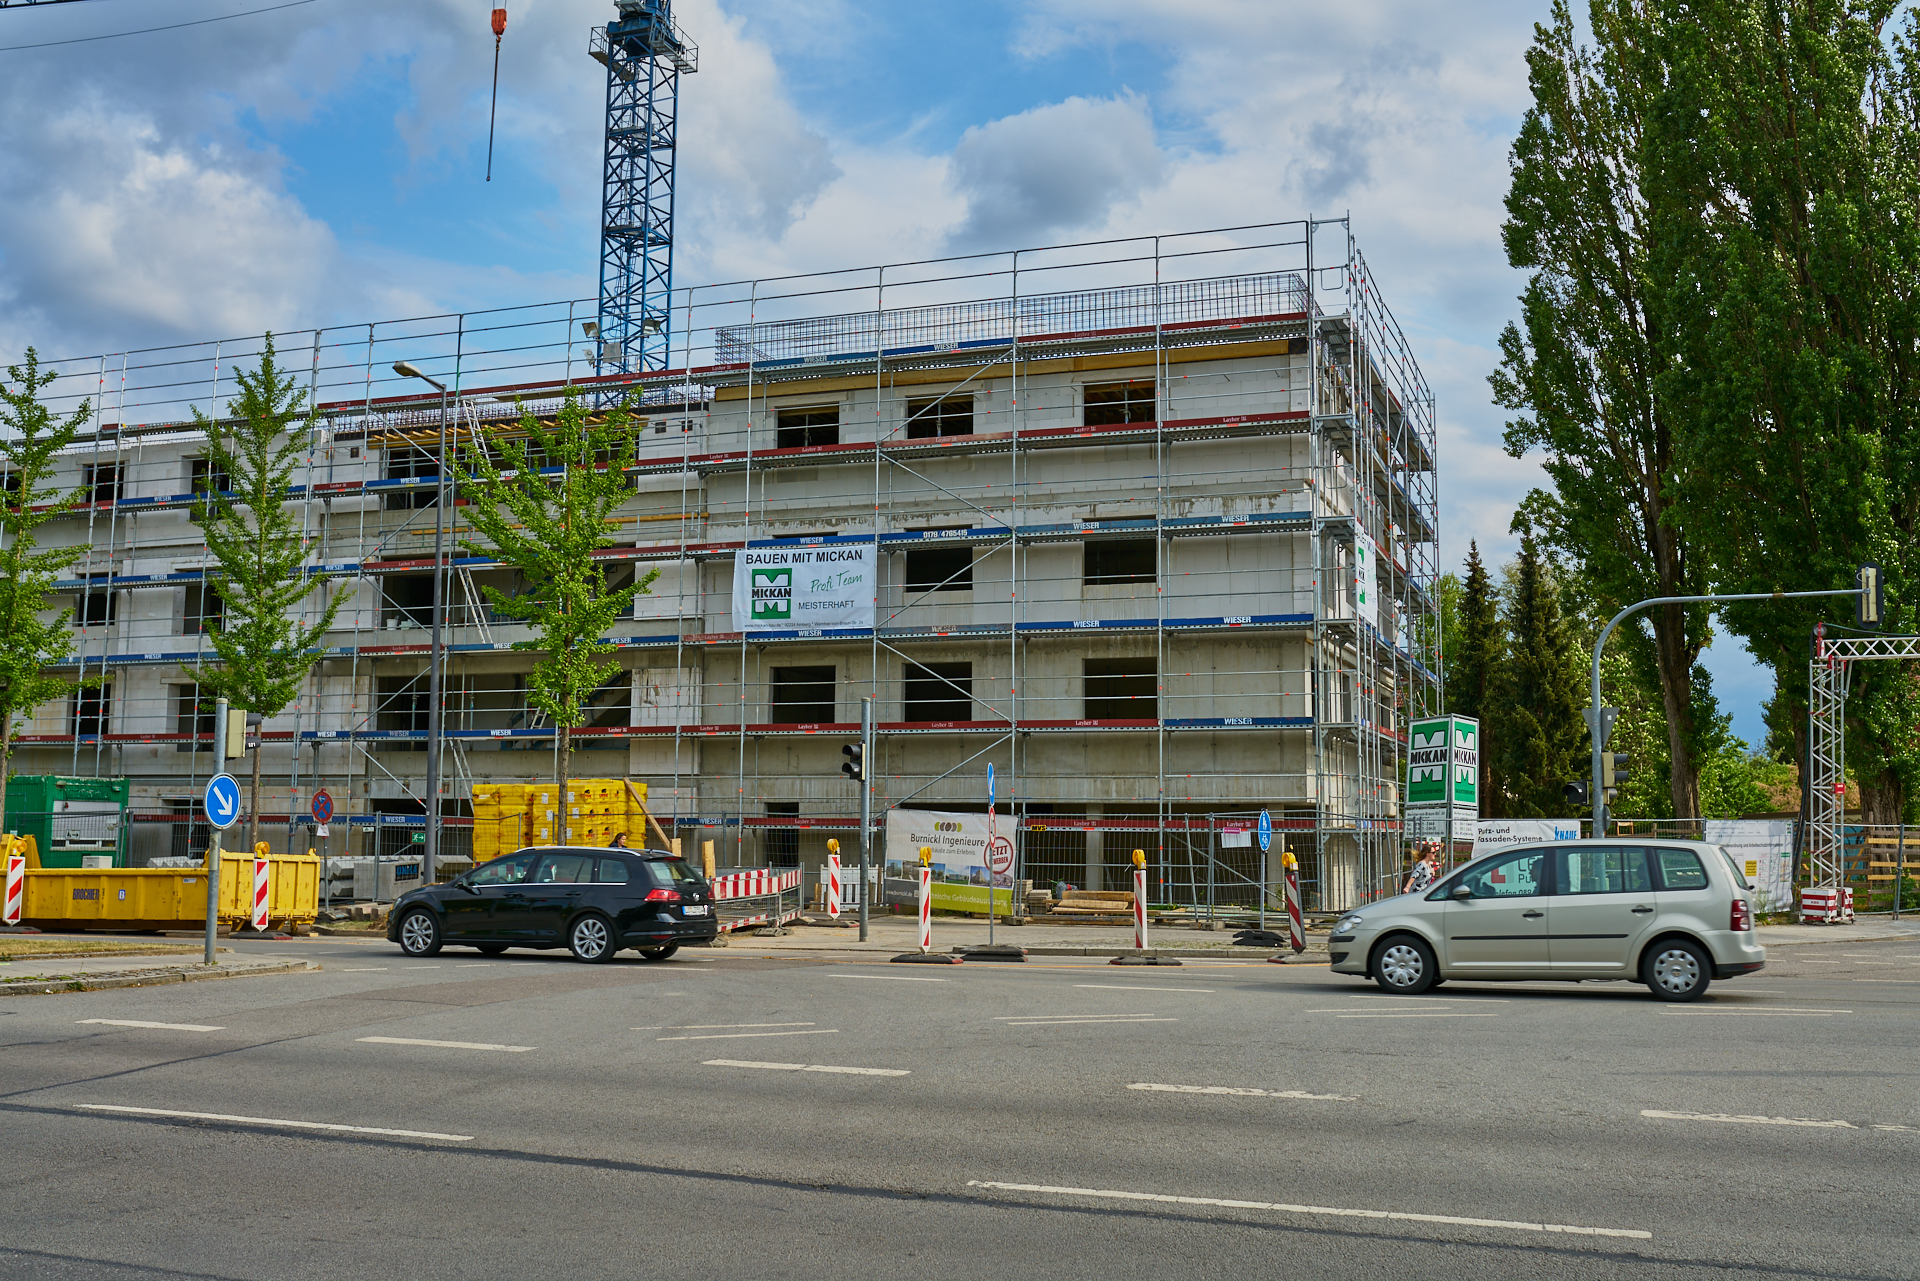 10.05.20018 - Baustelle Maikäfersiedlung in der Bad Schachener Straße in Neuperlach